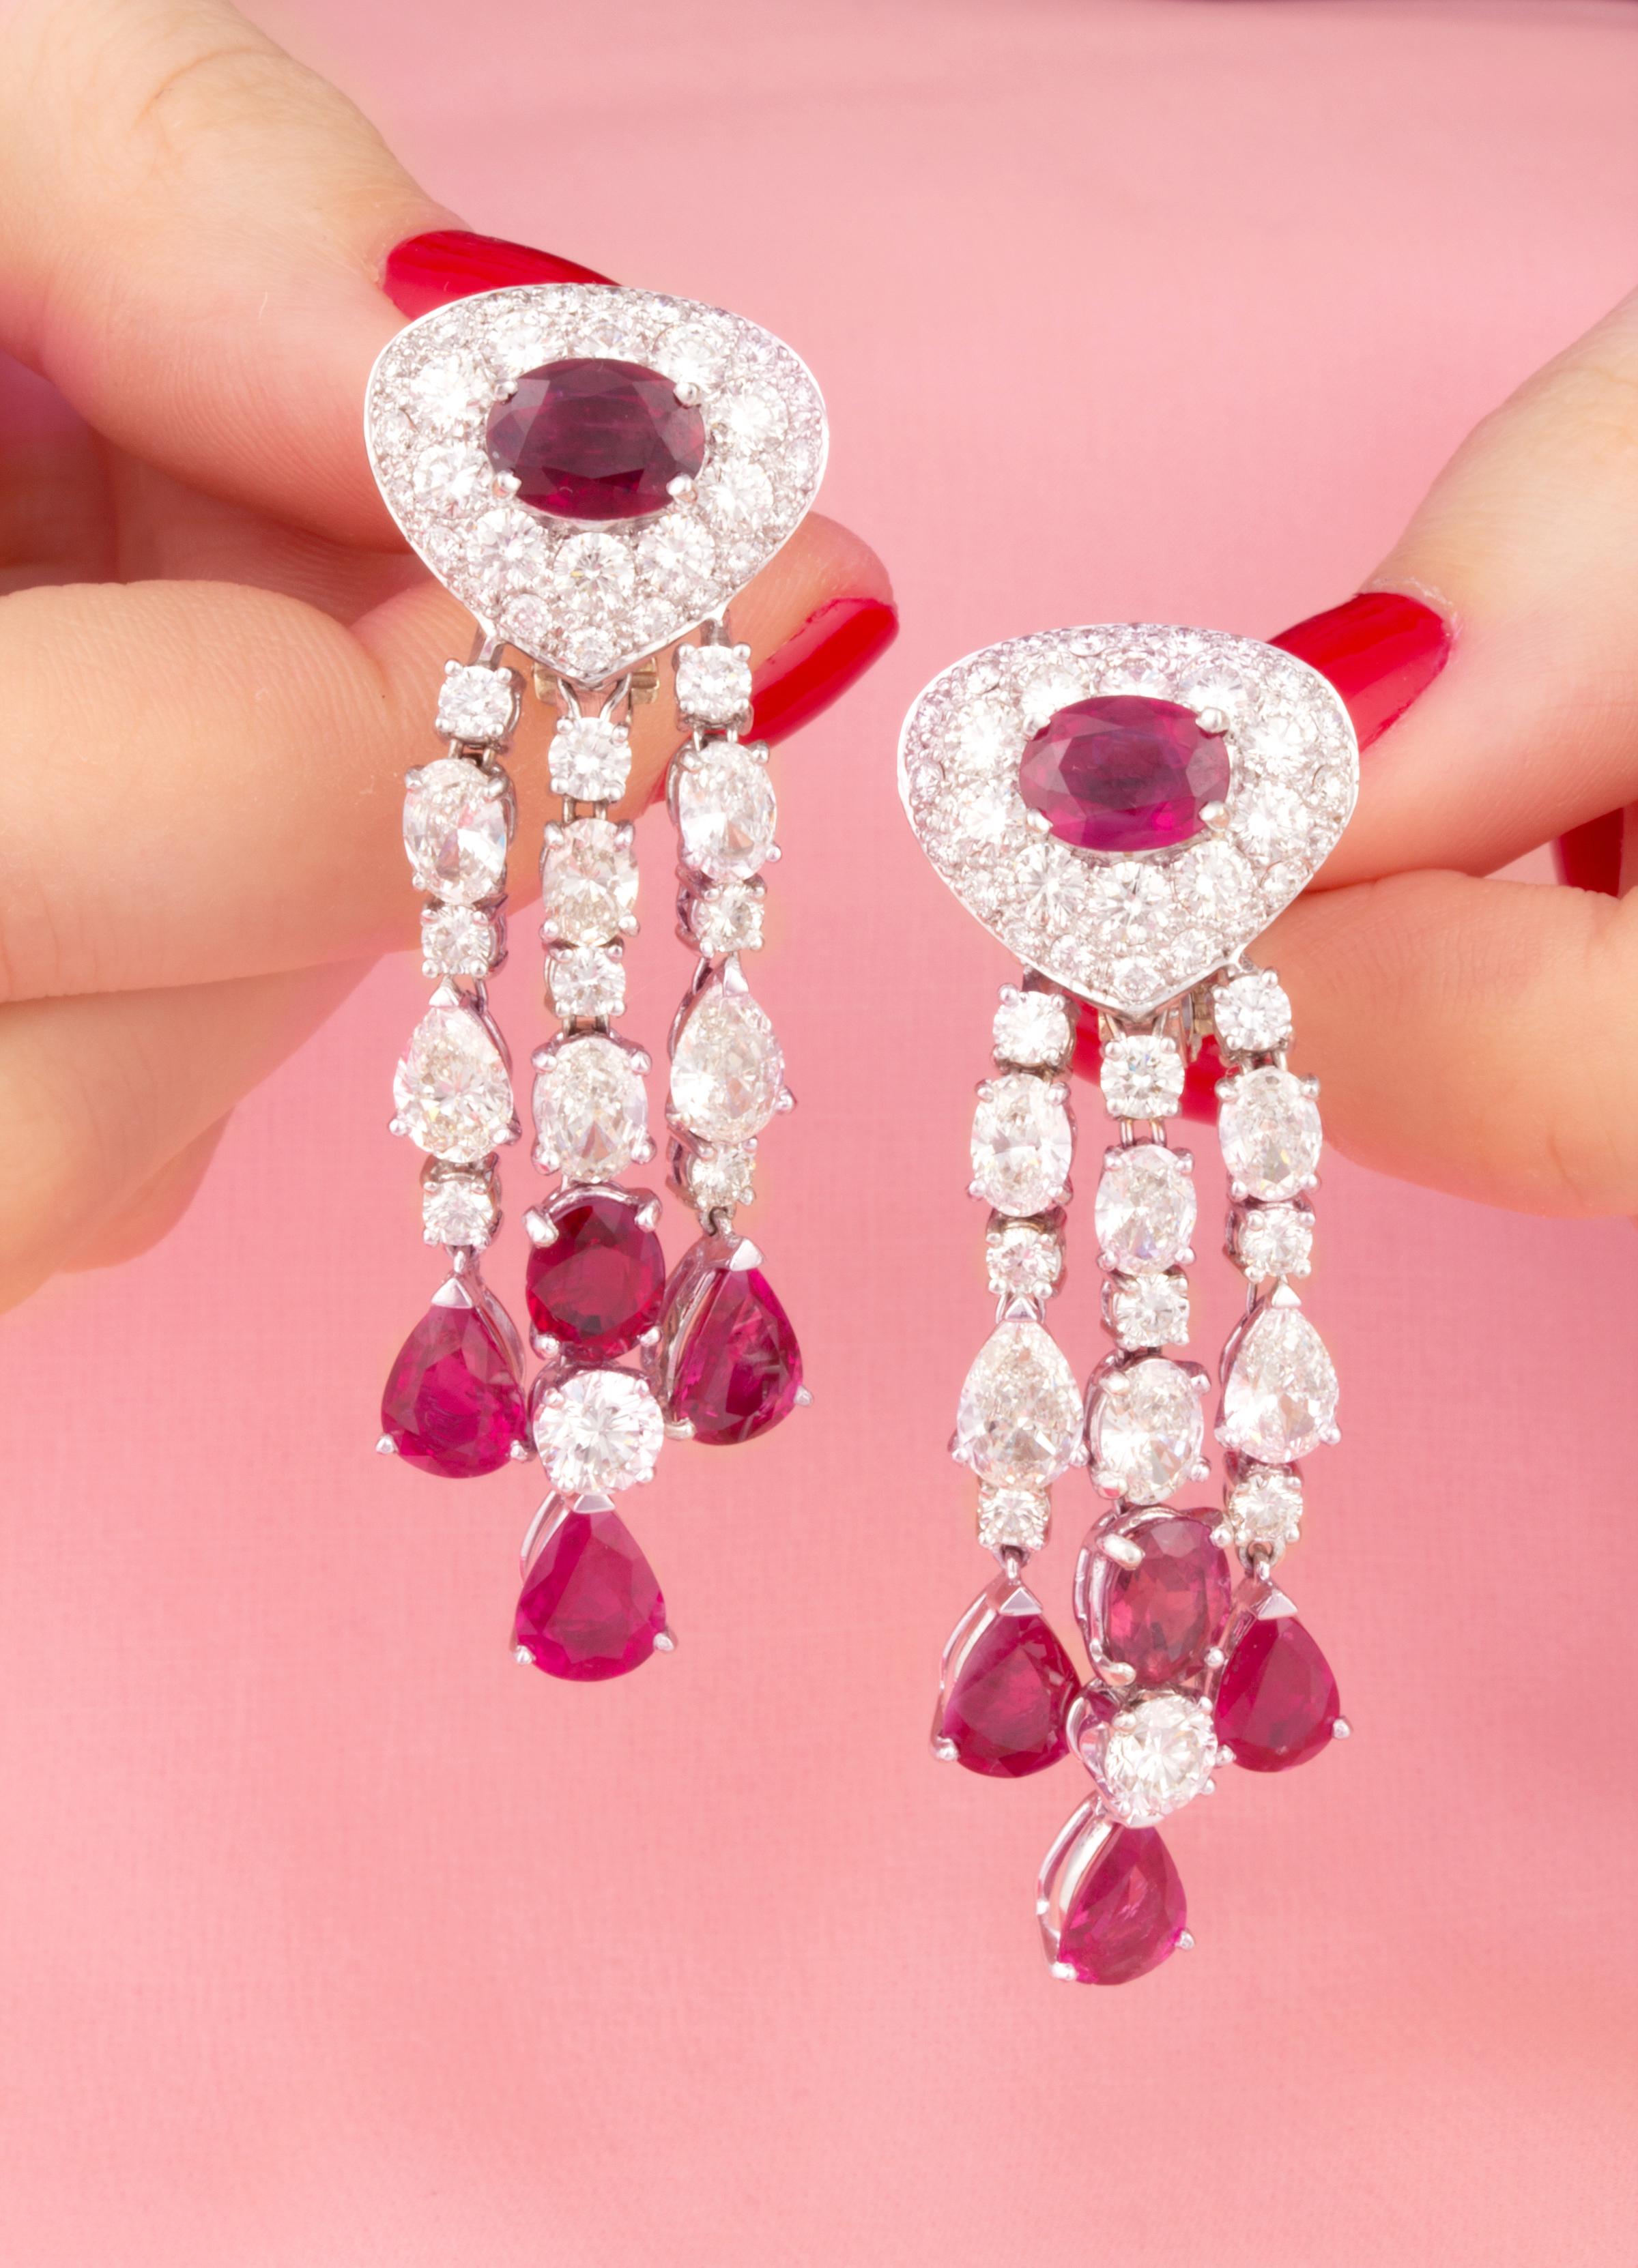 Brilliant Cut Ella Gafter Diamond Ruby Chandelier Earrings For Sale